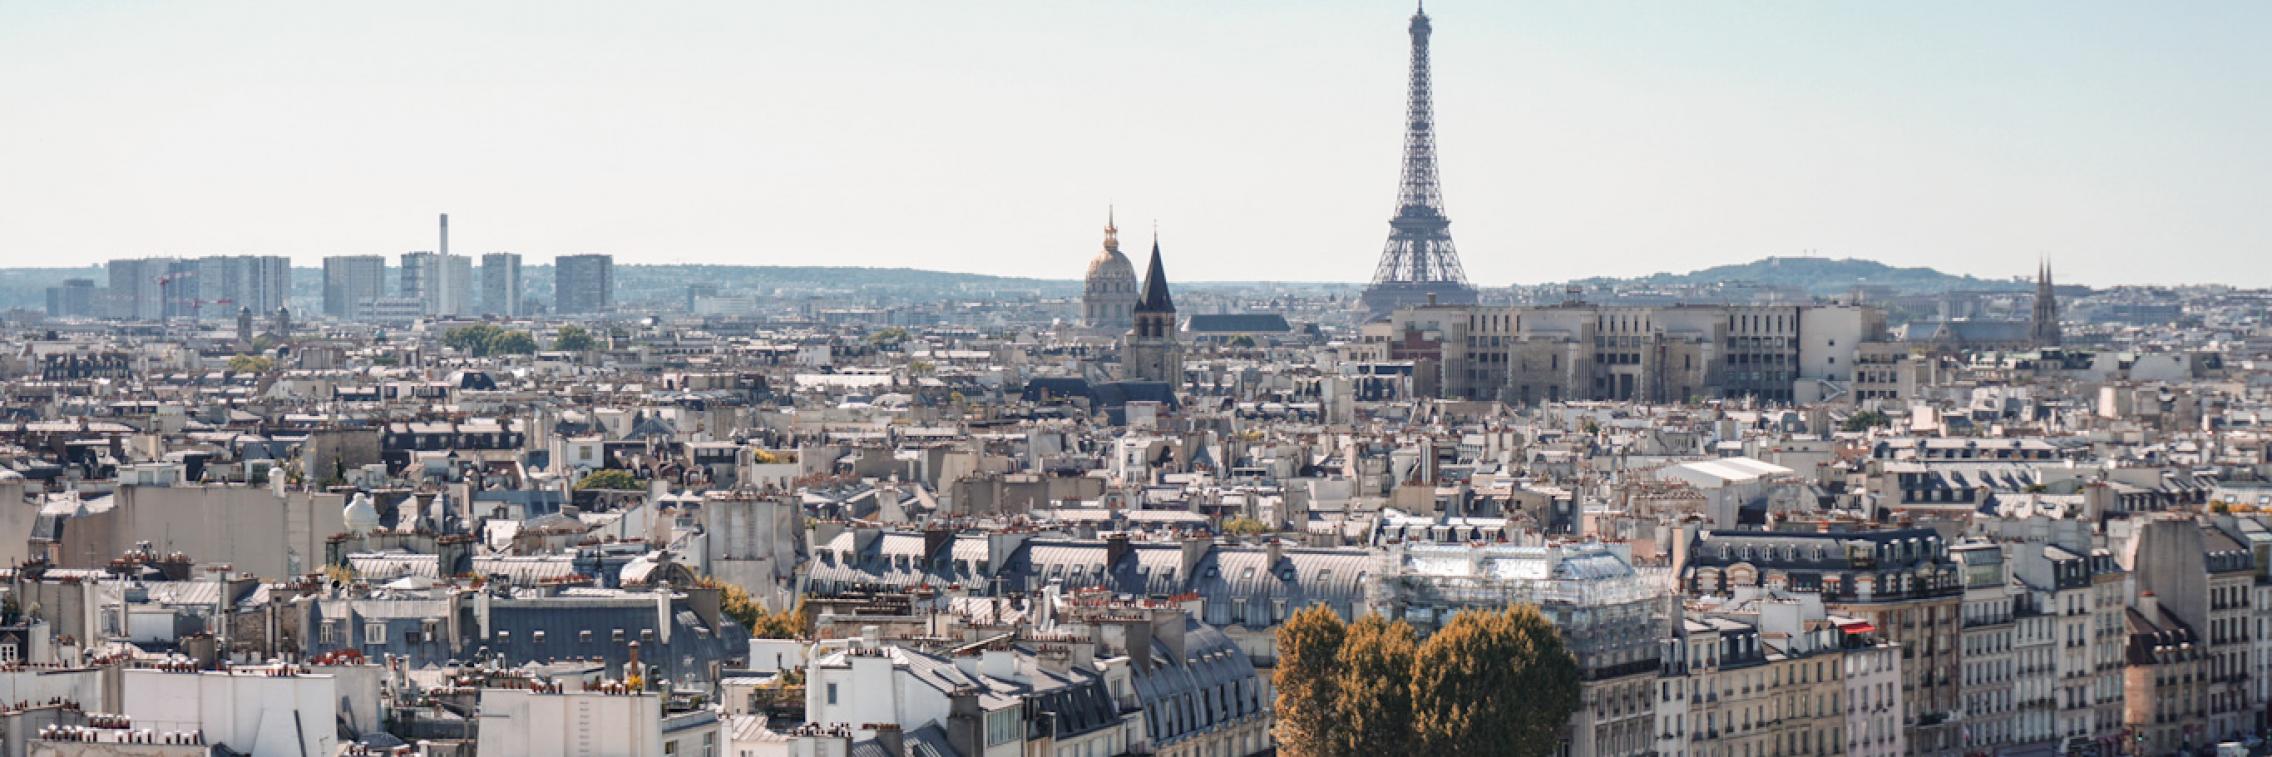 An image of the Parisian skyline